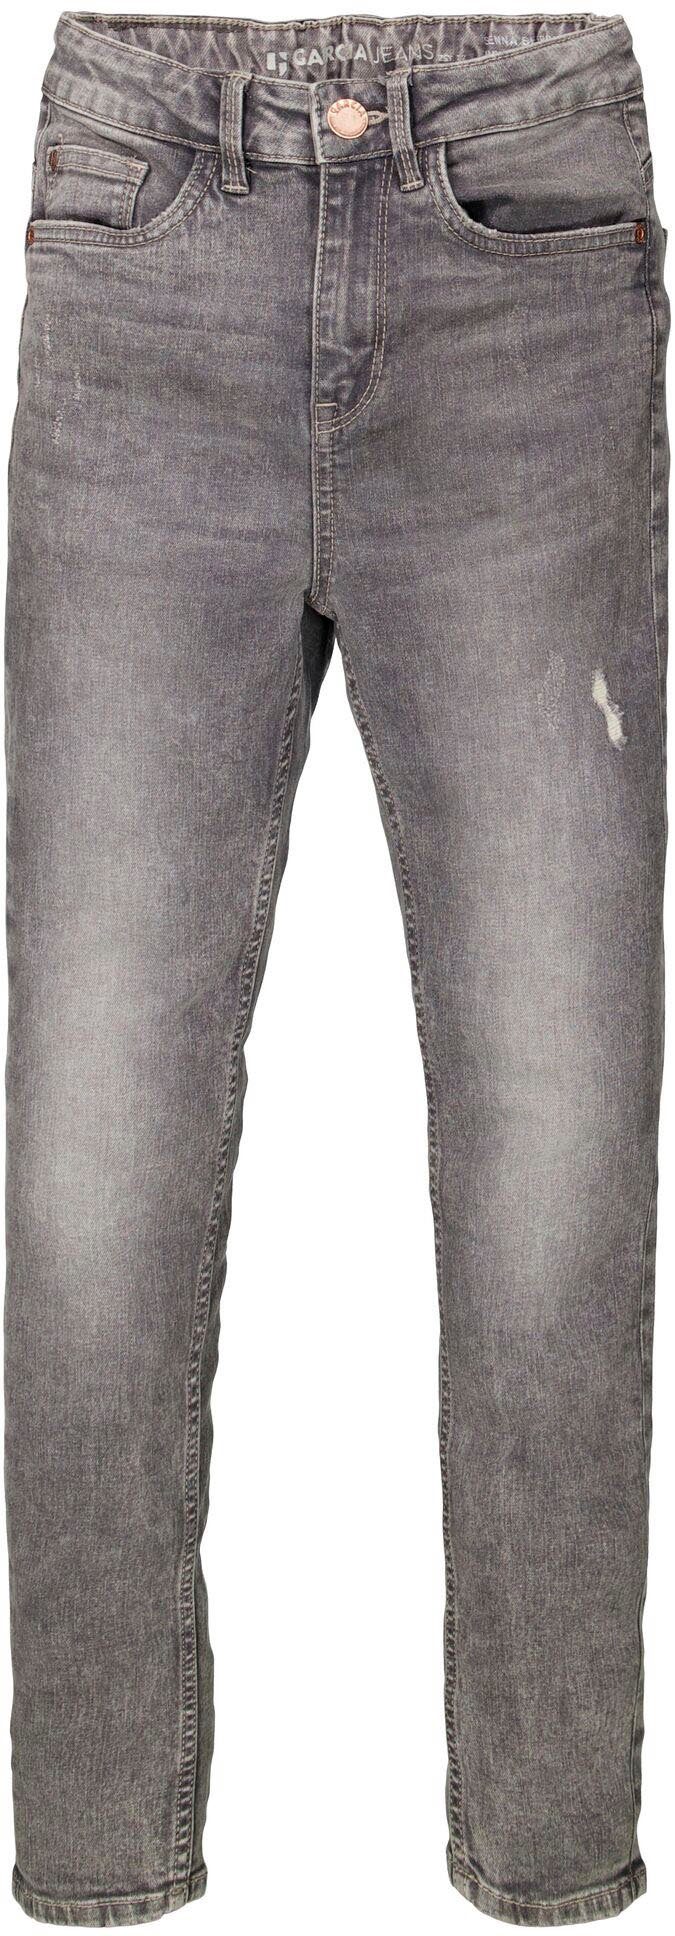 Garcia Stretch-Jeans Sienna 565, Sehr schmalen Passform und hohe Taille